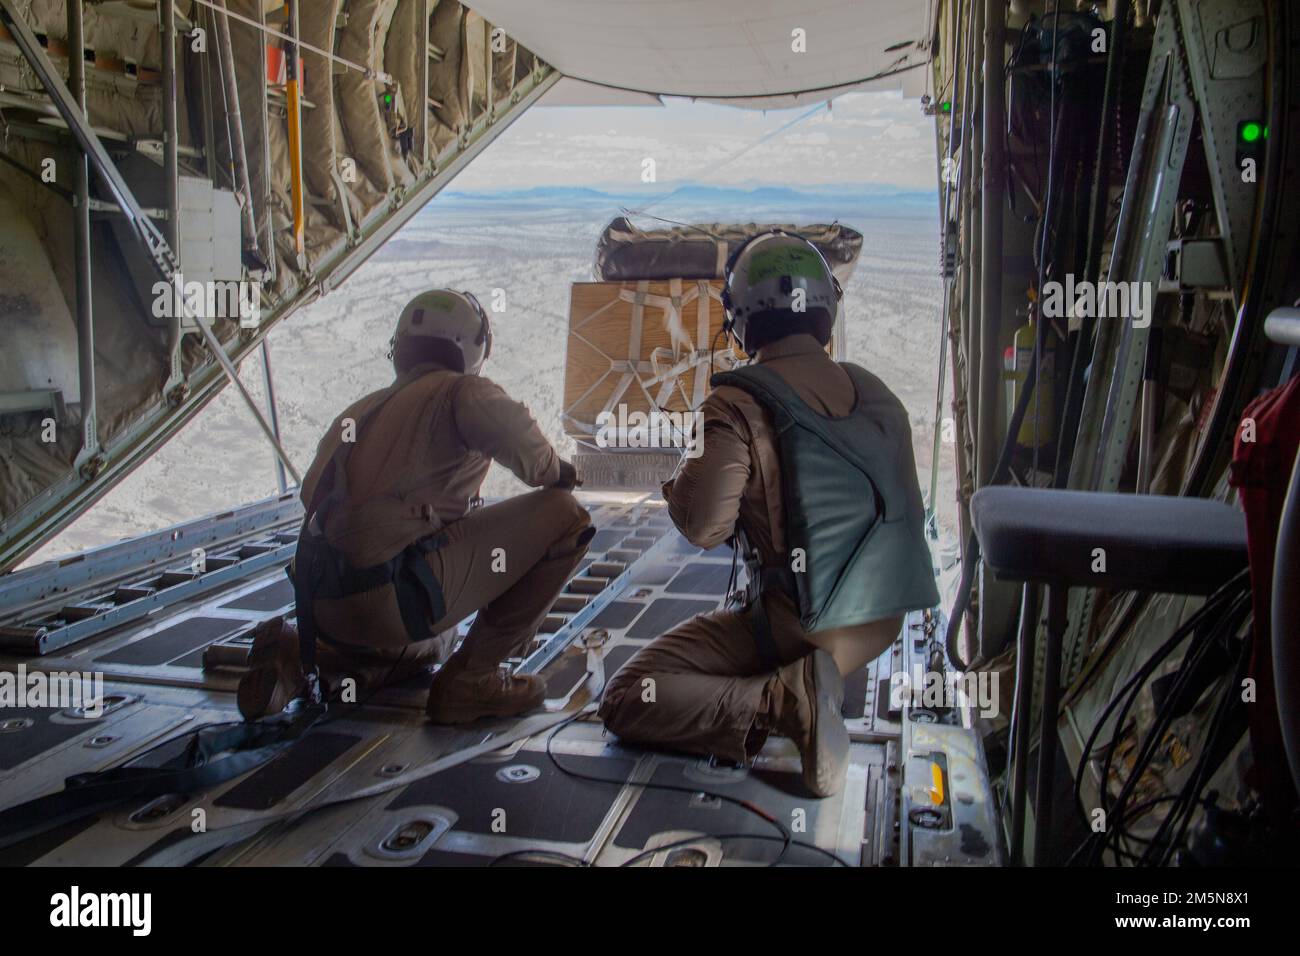 ÉTATS-UNIS Corps maritime Cpl. James Copeland Jr., à gauche, un maître d'équipage d'aéronef à voilure fixe KC-130 de Cartersville (Géorgie), Et le sergent Timothy Leidecker, un mécanicien de bord, tous deux affectés à l'escadron 1 des armes et tactiques de l'aviation maritime (MAWTS-1), observent une chute d'approvisionnement au cours des opérations STOVL distribuées (ASM), en soutien au cours 2-22 de l'instructeur d'armes et de tactiques (WTI), près de Yuma, en Arizona, au 29 mars 2022. WTI est un événement de formation de sept semaines organisé par MAWTS-1, offrant une formation tactique avancée standardisée et une certification des qualifications des instructeurs de l'unité pour soutenir Marine avia Banque D'Images